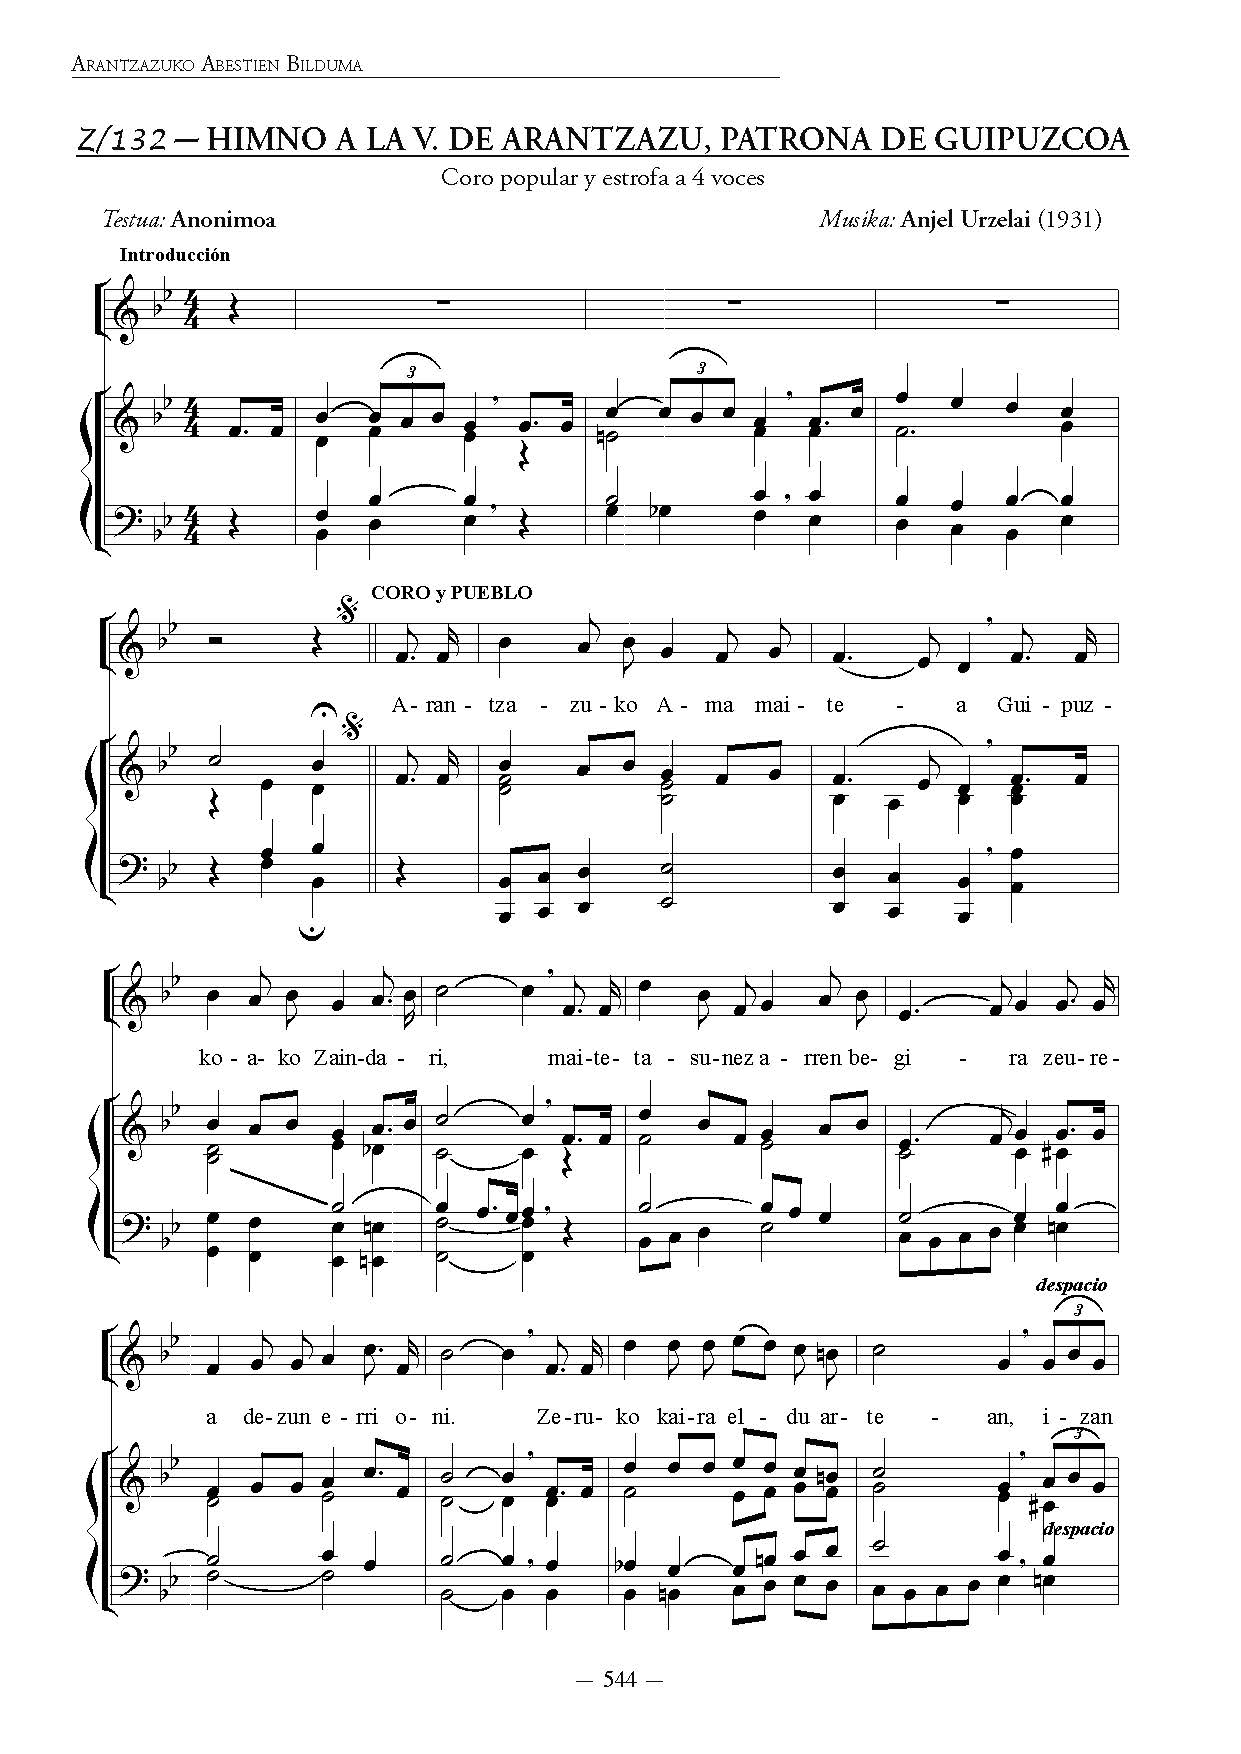 Himno a la Virgen de Arantzazu, Patrona de Guipúzcoa (1931)